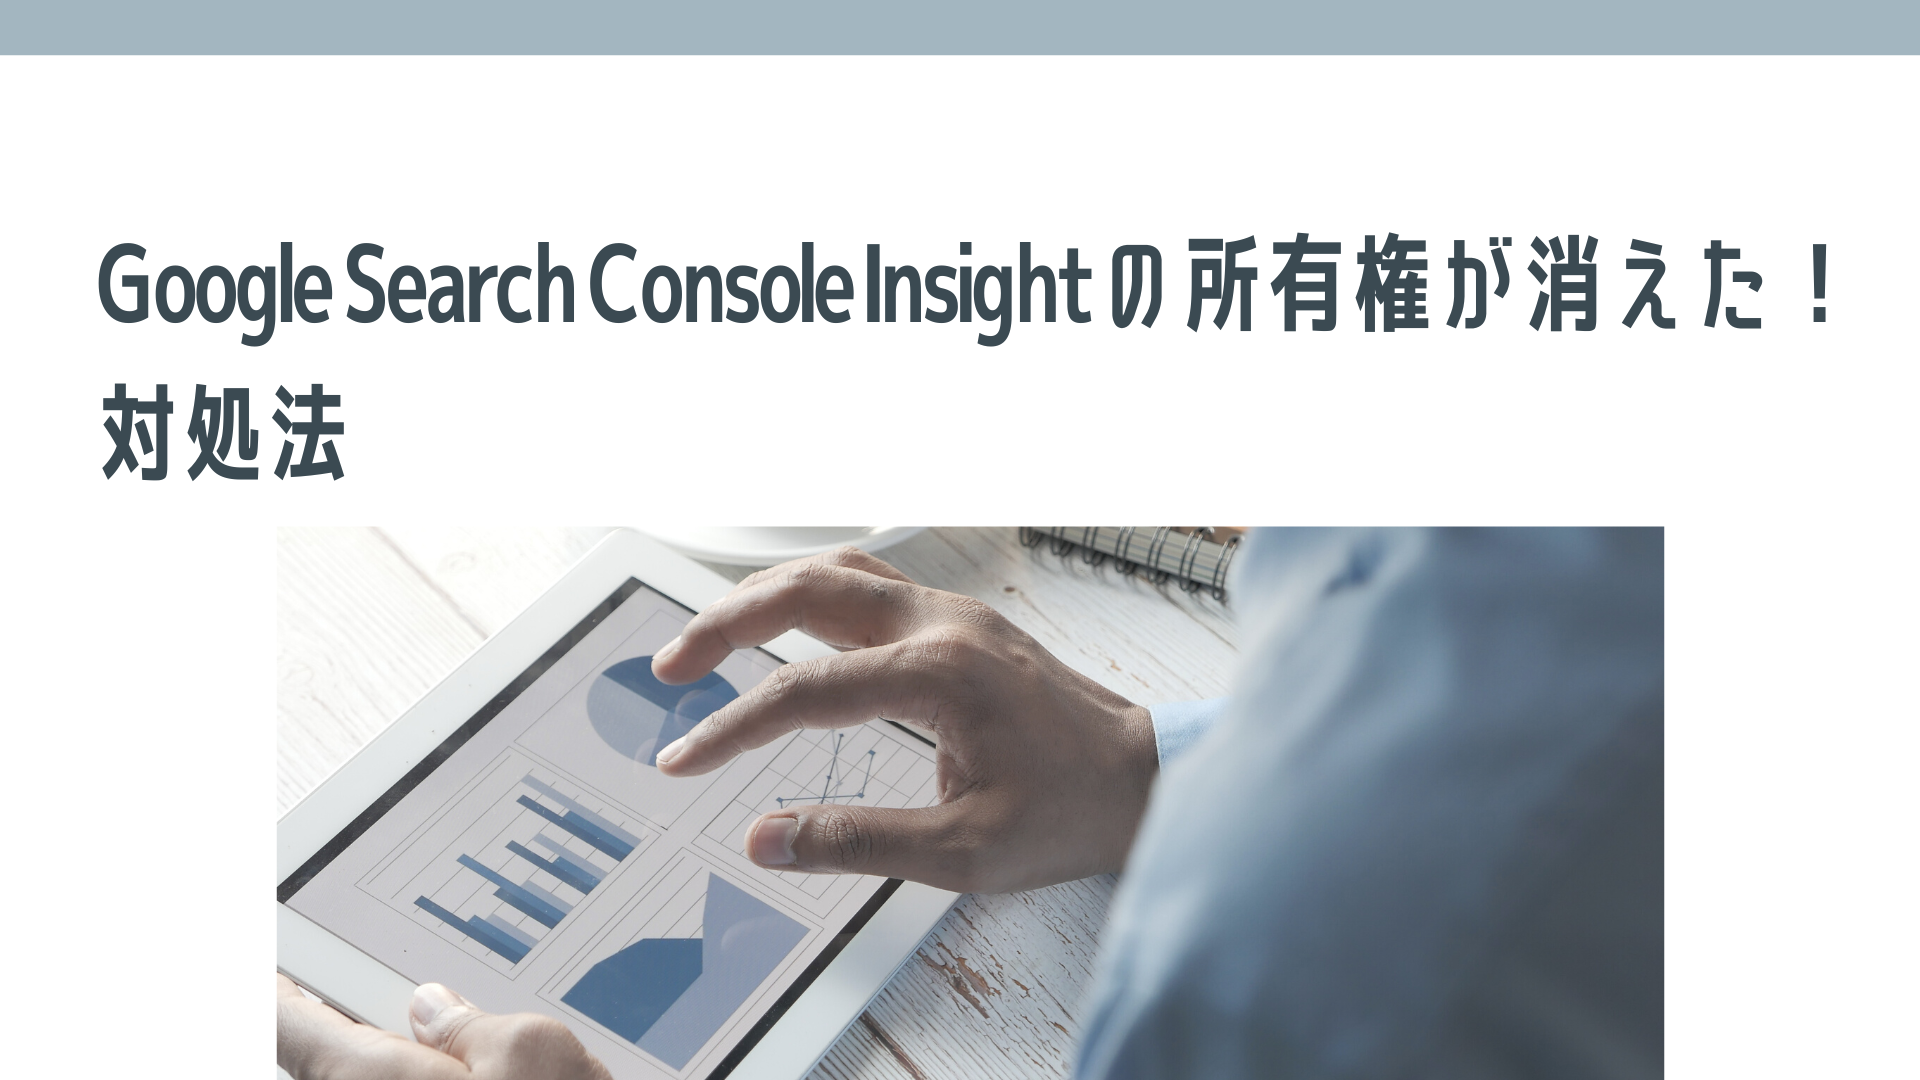 Search Console Insight